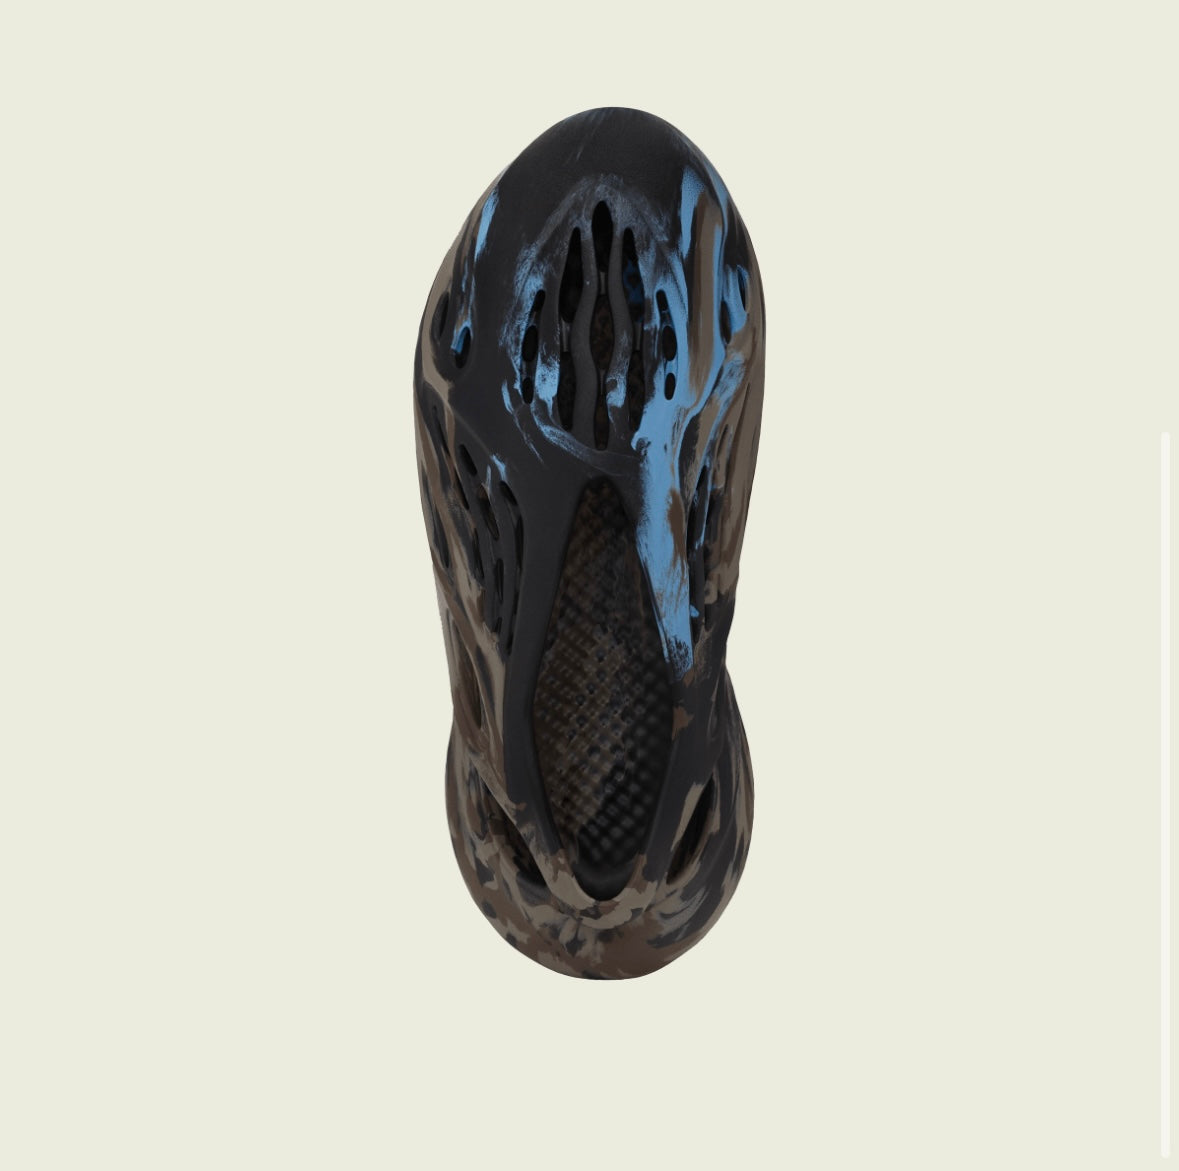 adidas Yeezy Foam Runner 'MX Brown Blue